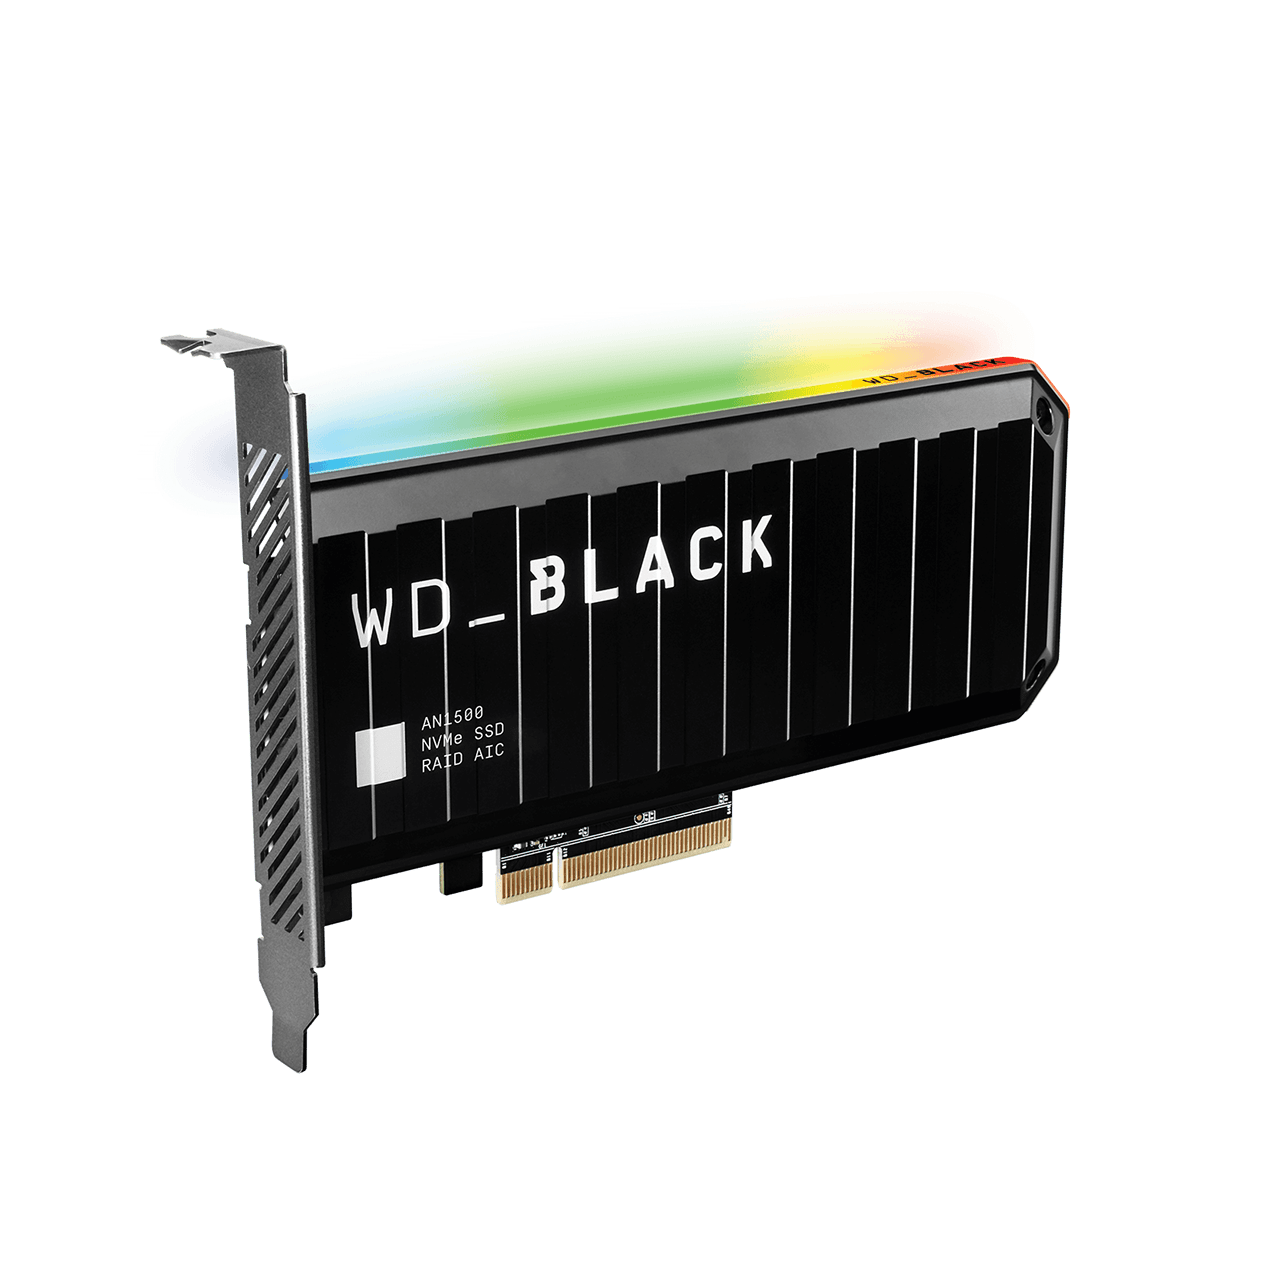 WD Black AN1500 2TB PCIe NVMe Gen 3.0 x 4 SSD 